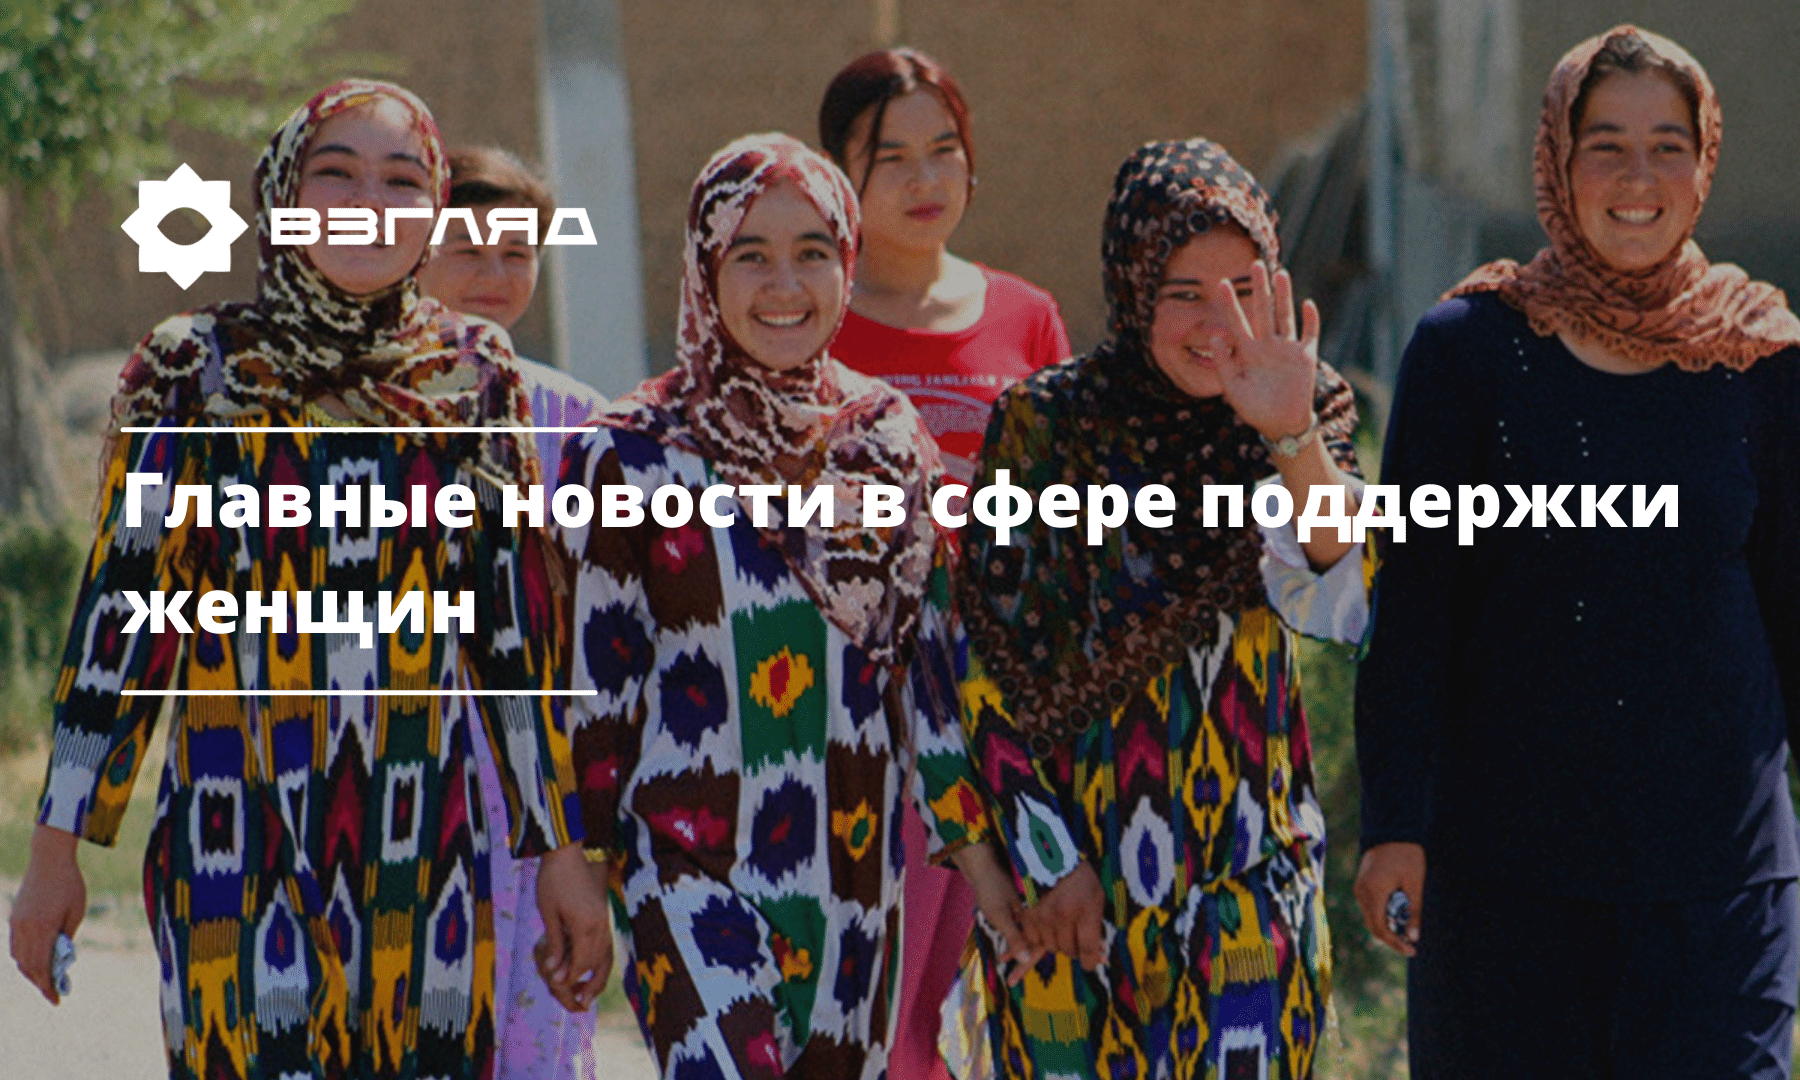 Продление охранного ордера и статистика судей: последние новости о женщинах в Узбекистане